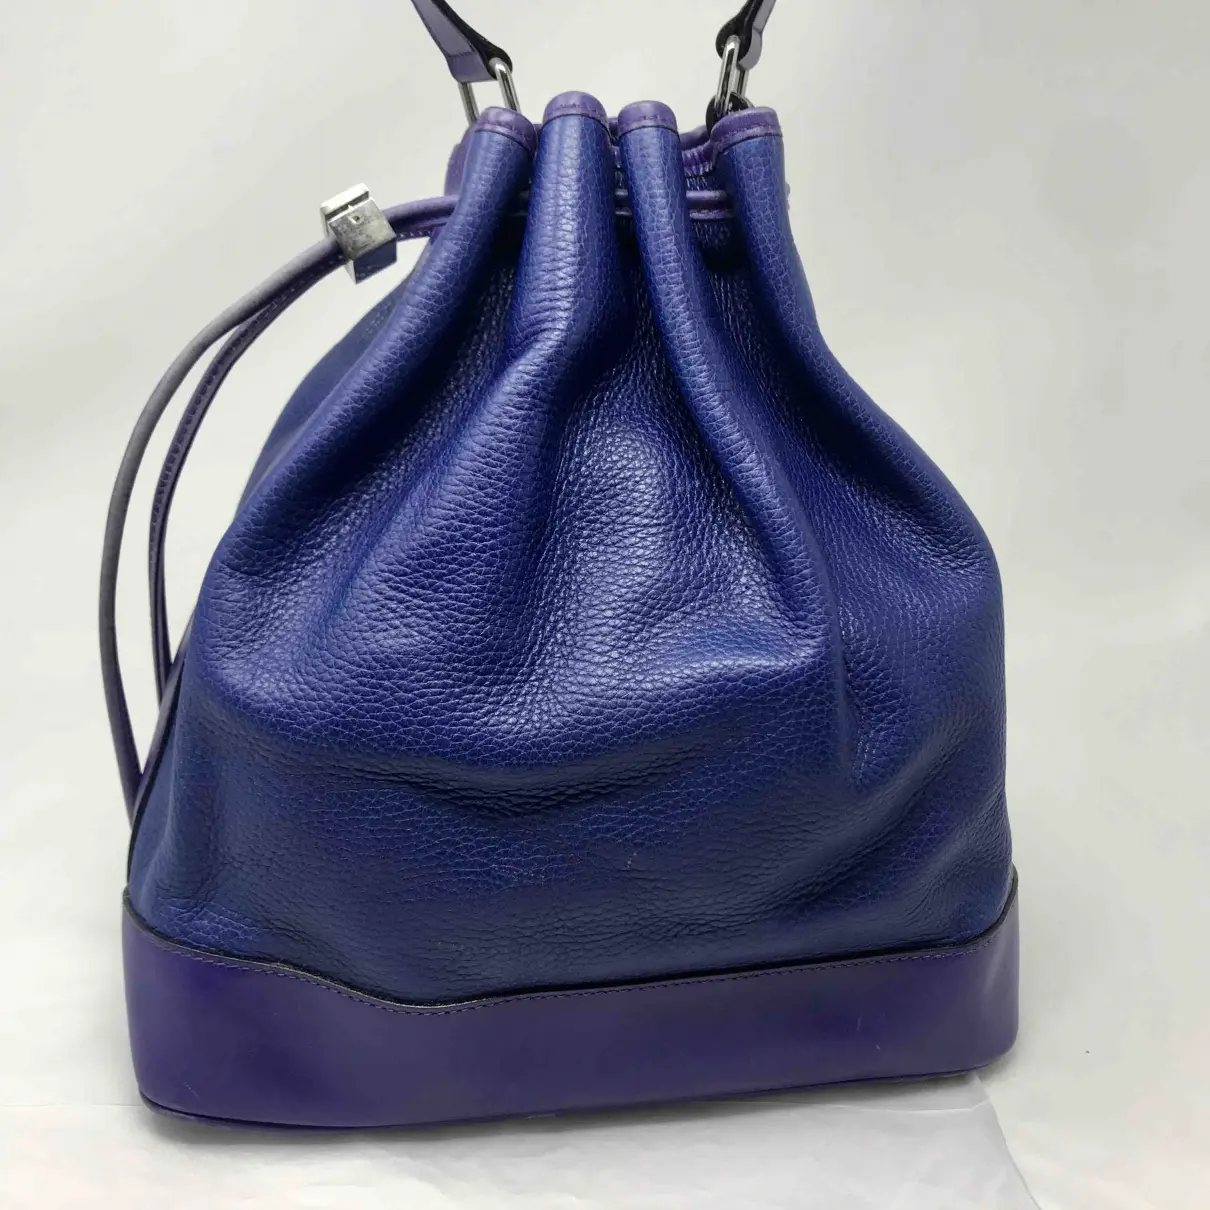 Seau Sangle leather handbag Celine - Vintage